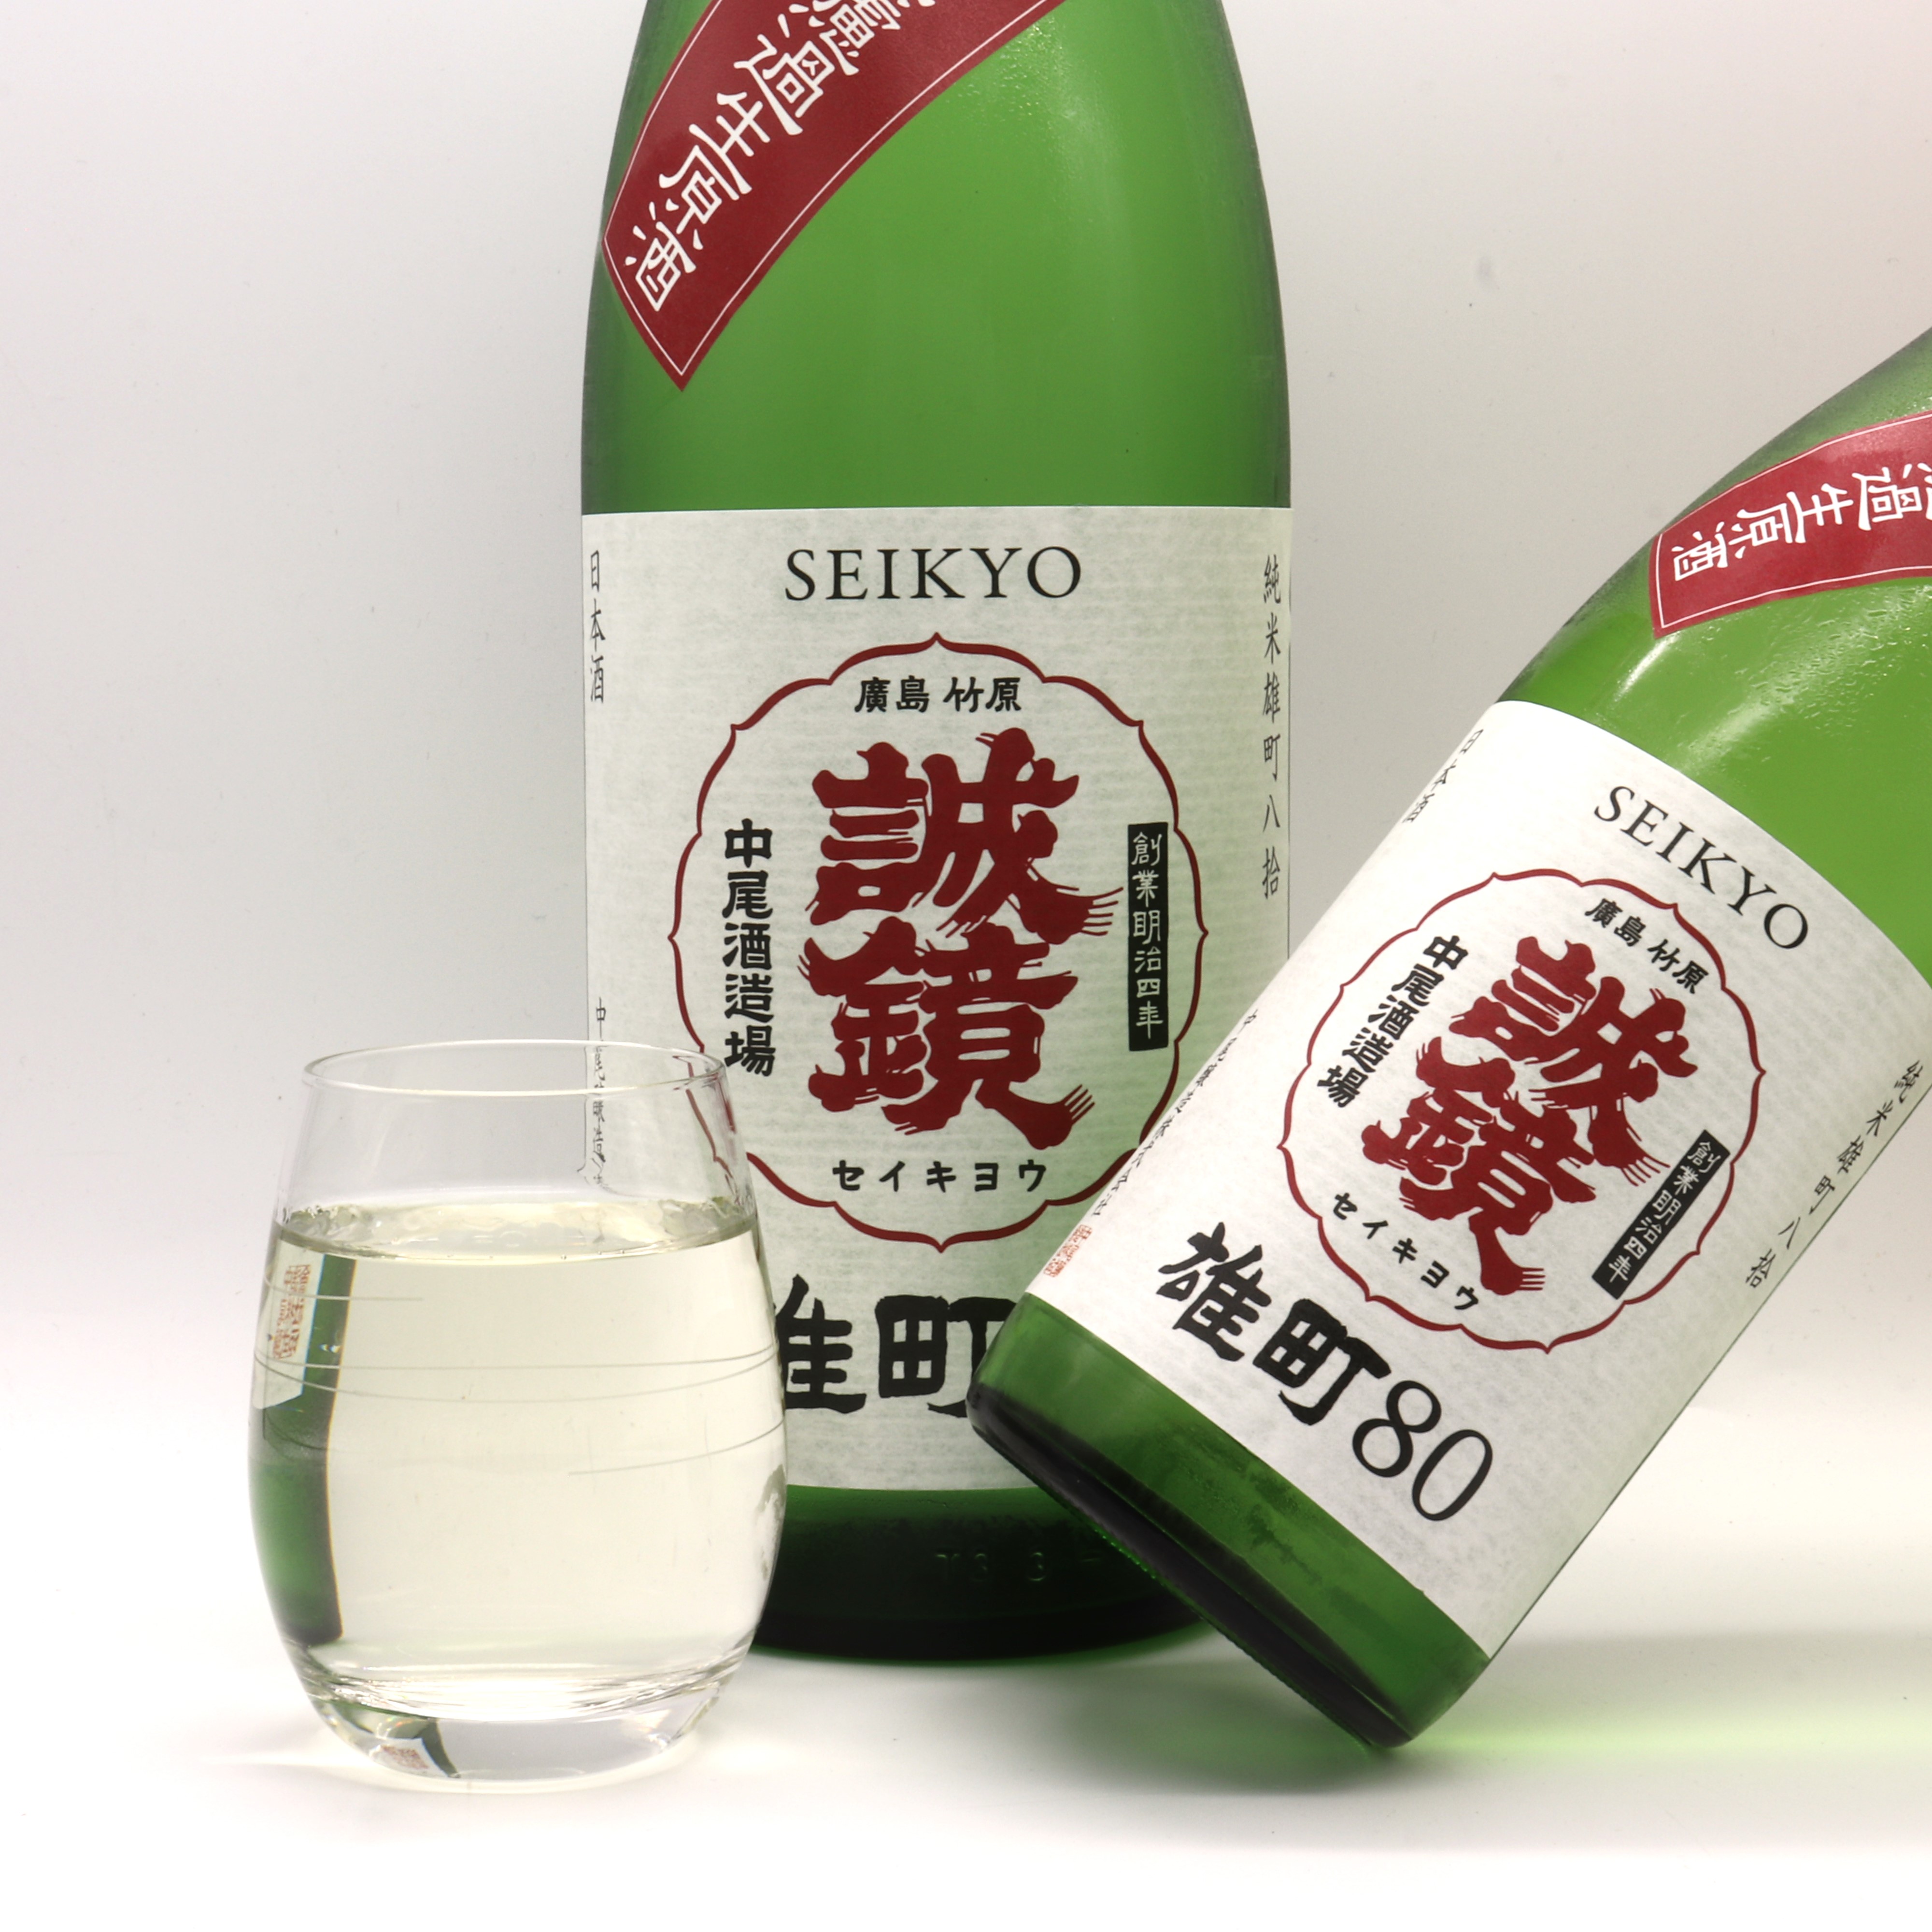 【ブログ更新】誠鏡【番外品】雄町米の個性を最大限に引き出した純米生原酒が限定入荷しました